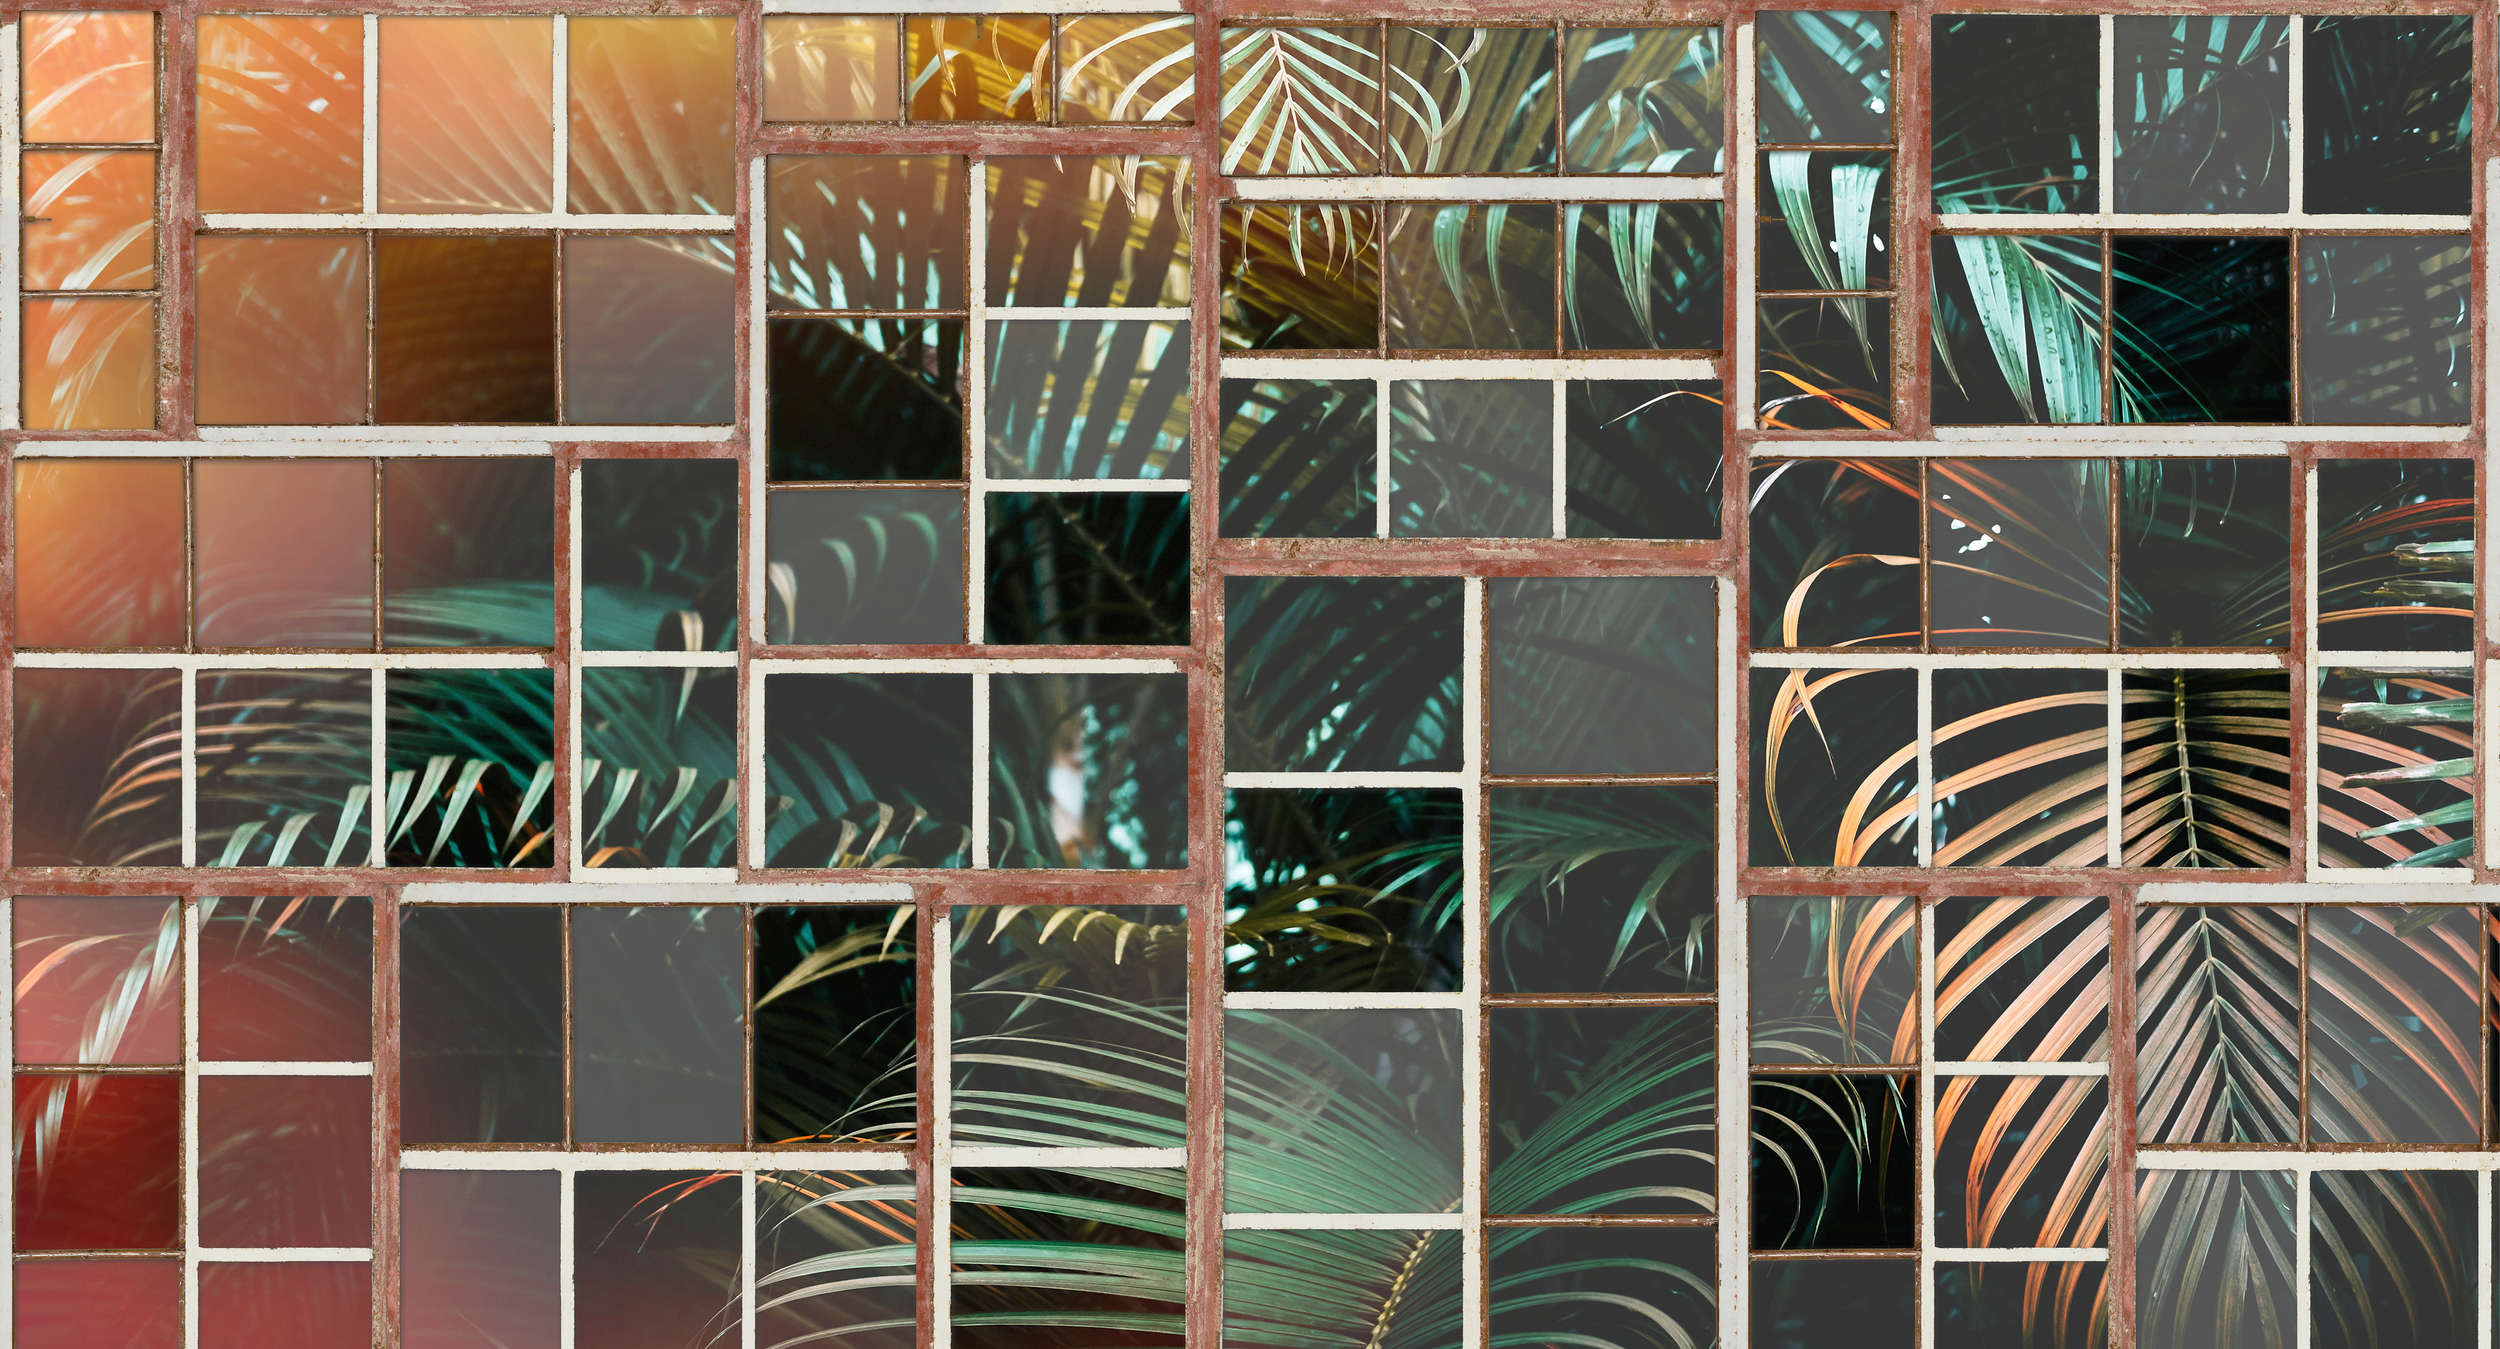             Mural de pared con vista, ventana retro y helechos - marrón, blanco, verde
        